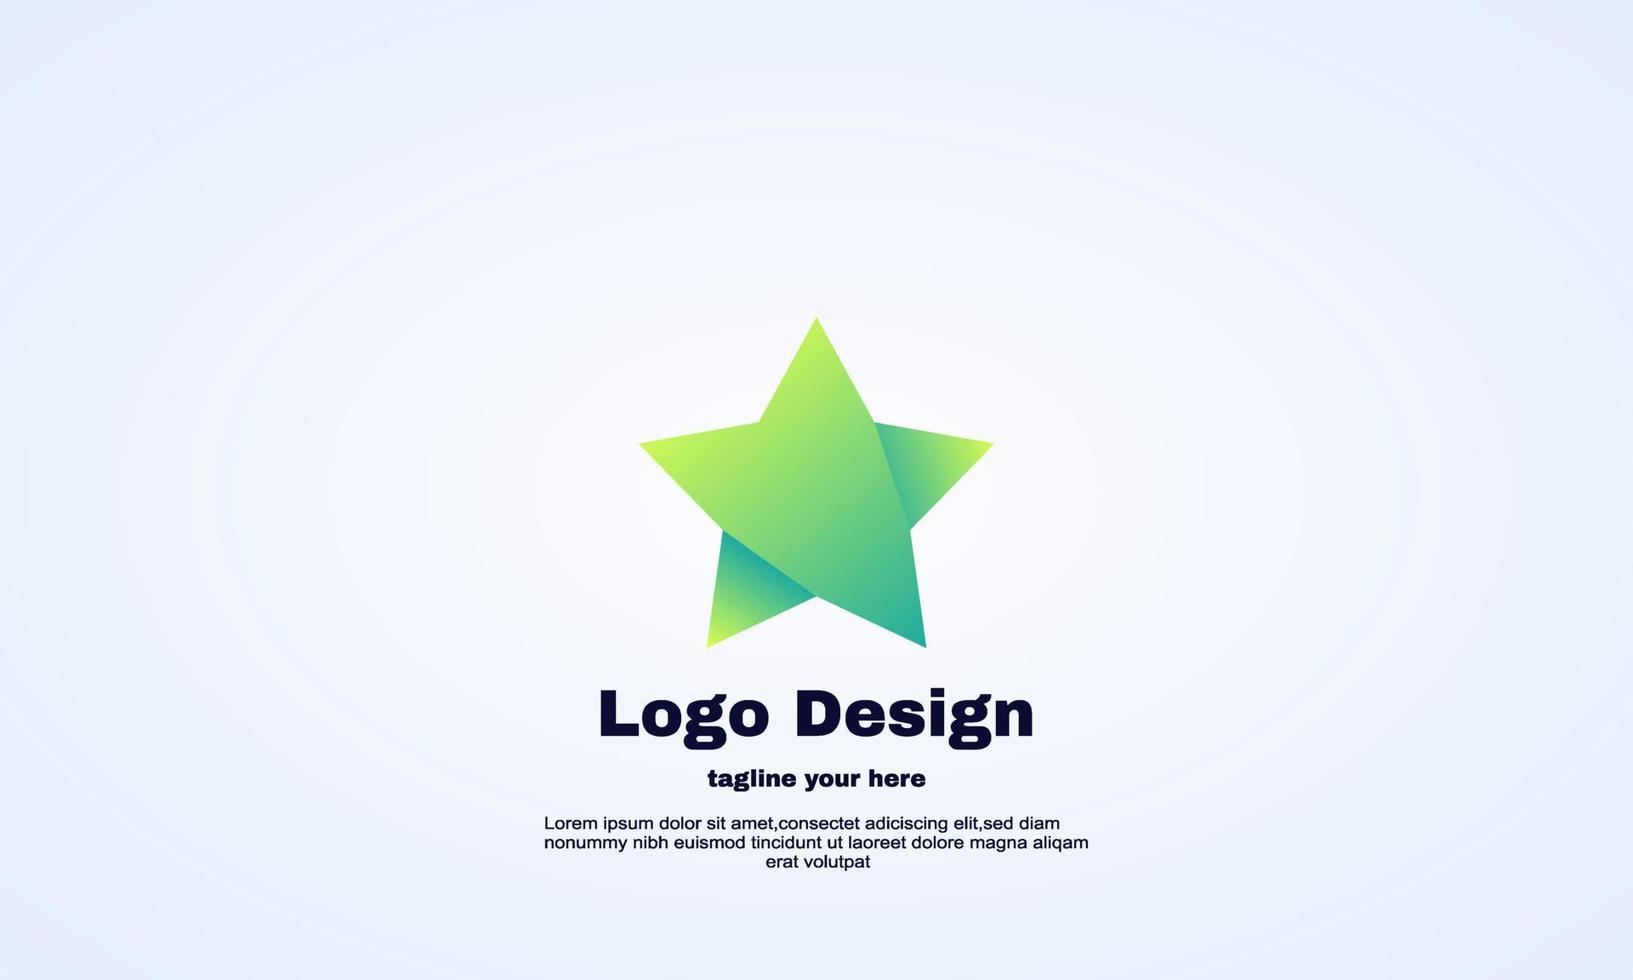 elementos de diseño vectorial para el logotipo de la empresa corporativa de su negocio, colorido abstracto. logotipo moderno, plantilla de diseño corporativo de empresa comercial. vector